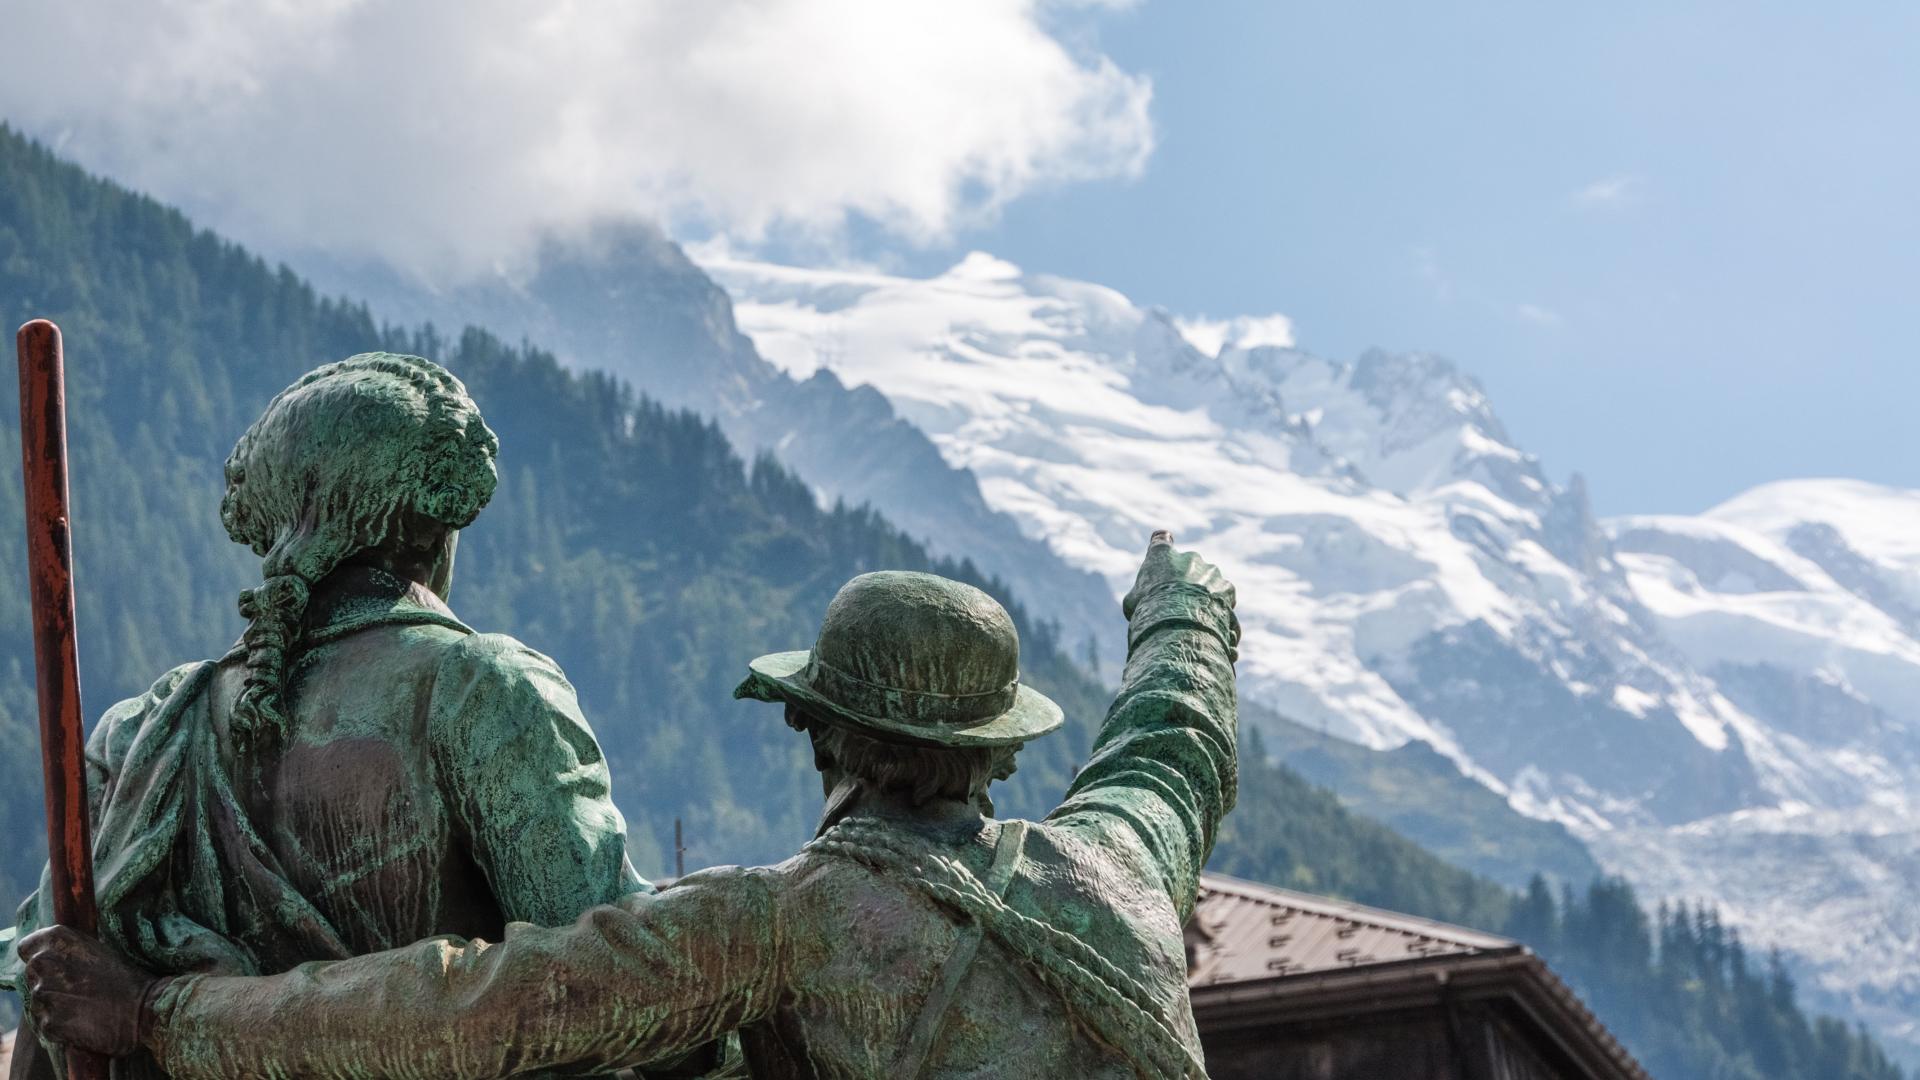 Statue de Jacques Balmat et Michel-Gabriel Paccard à Chamonix